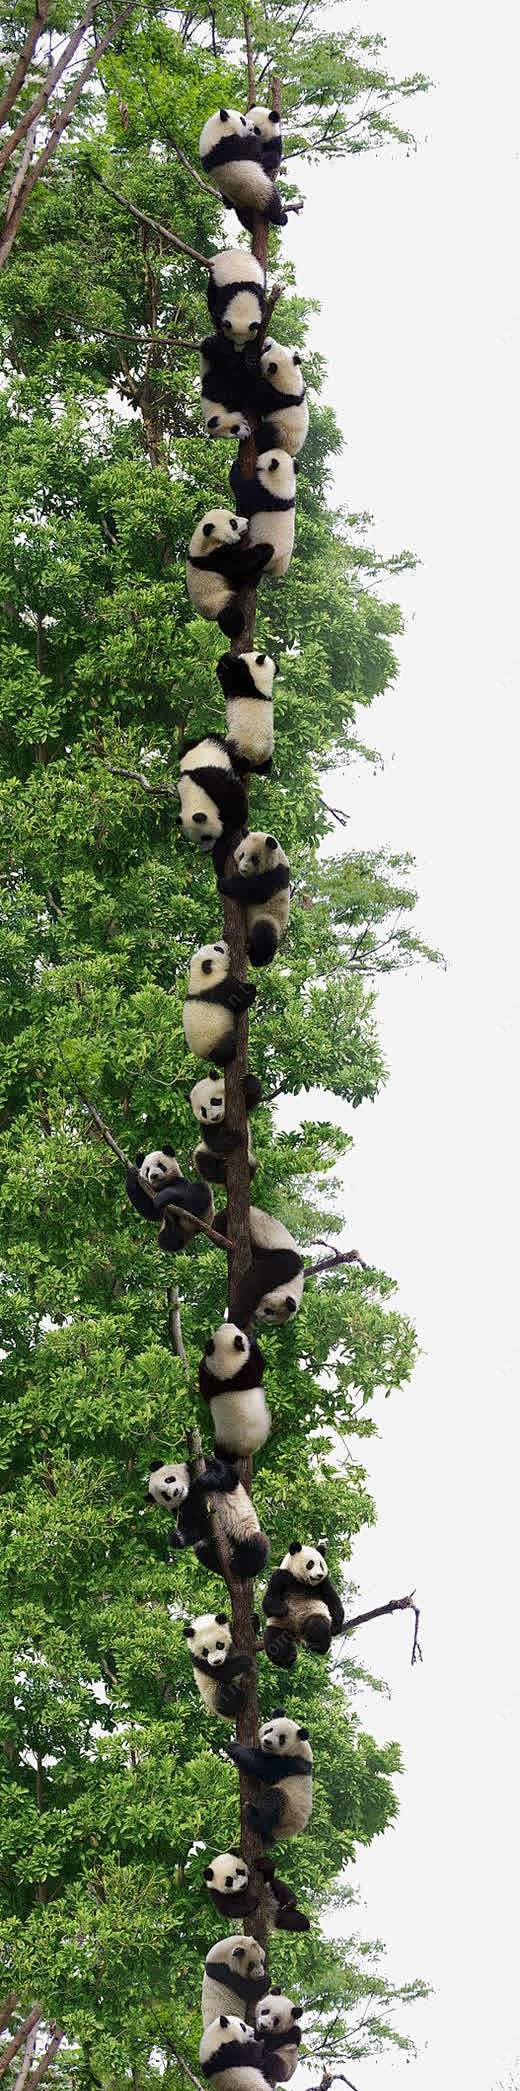 熊猫元素高清素材 中国熊猫 可爱熊猫 四...